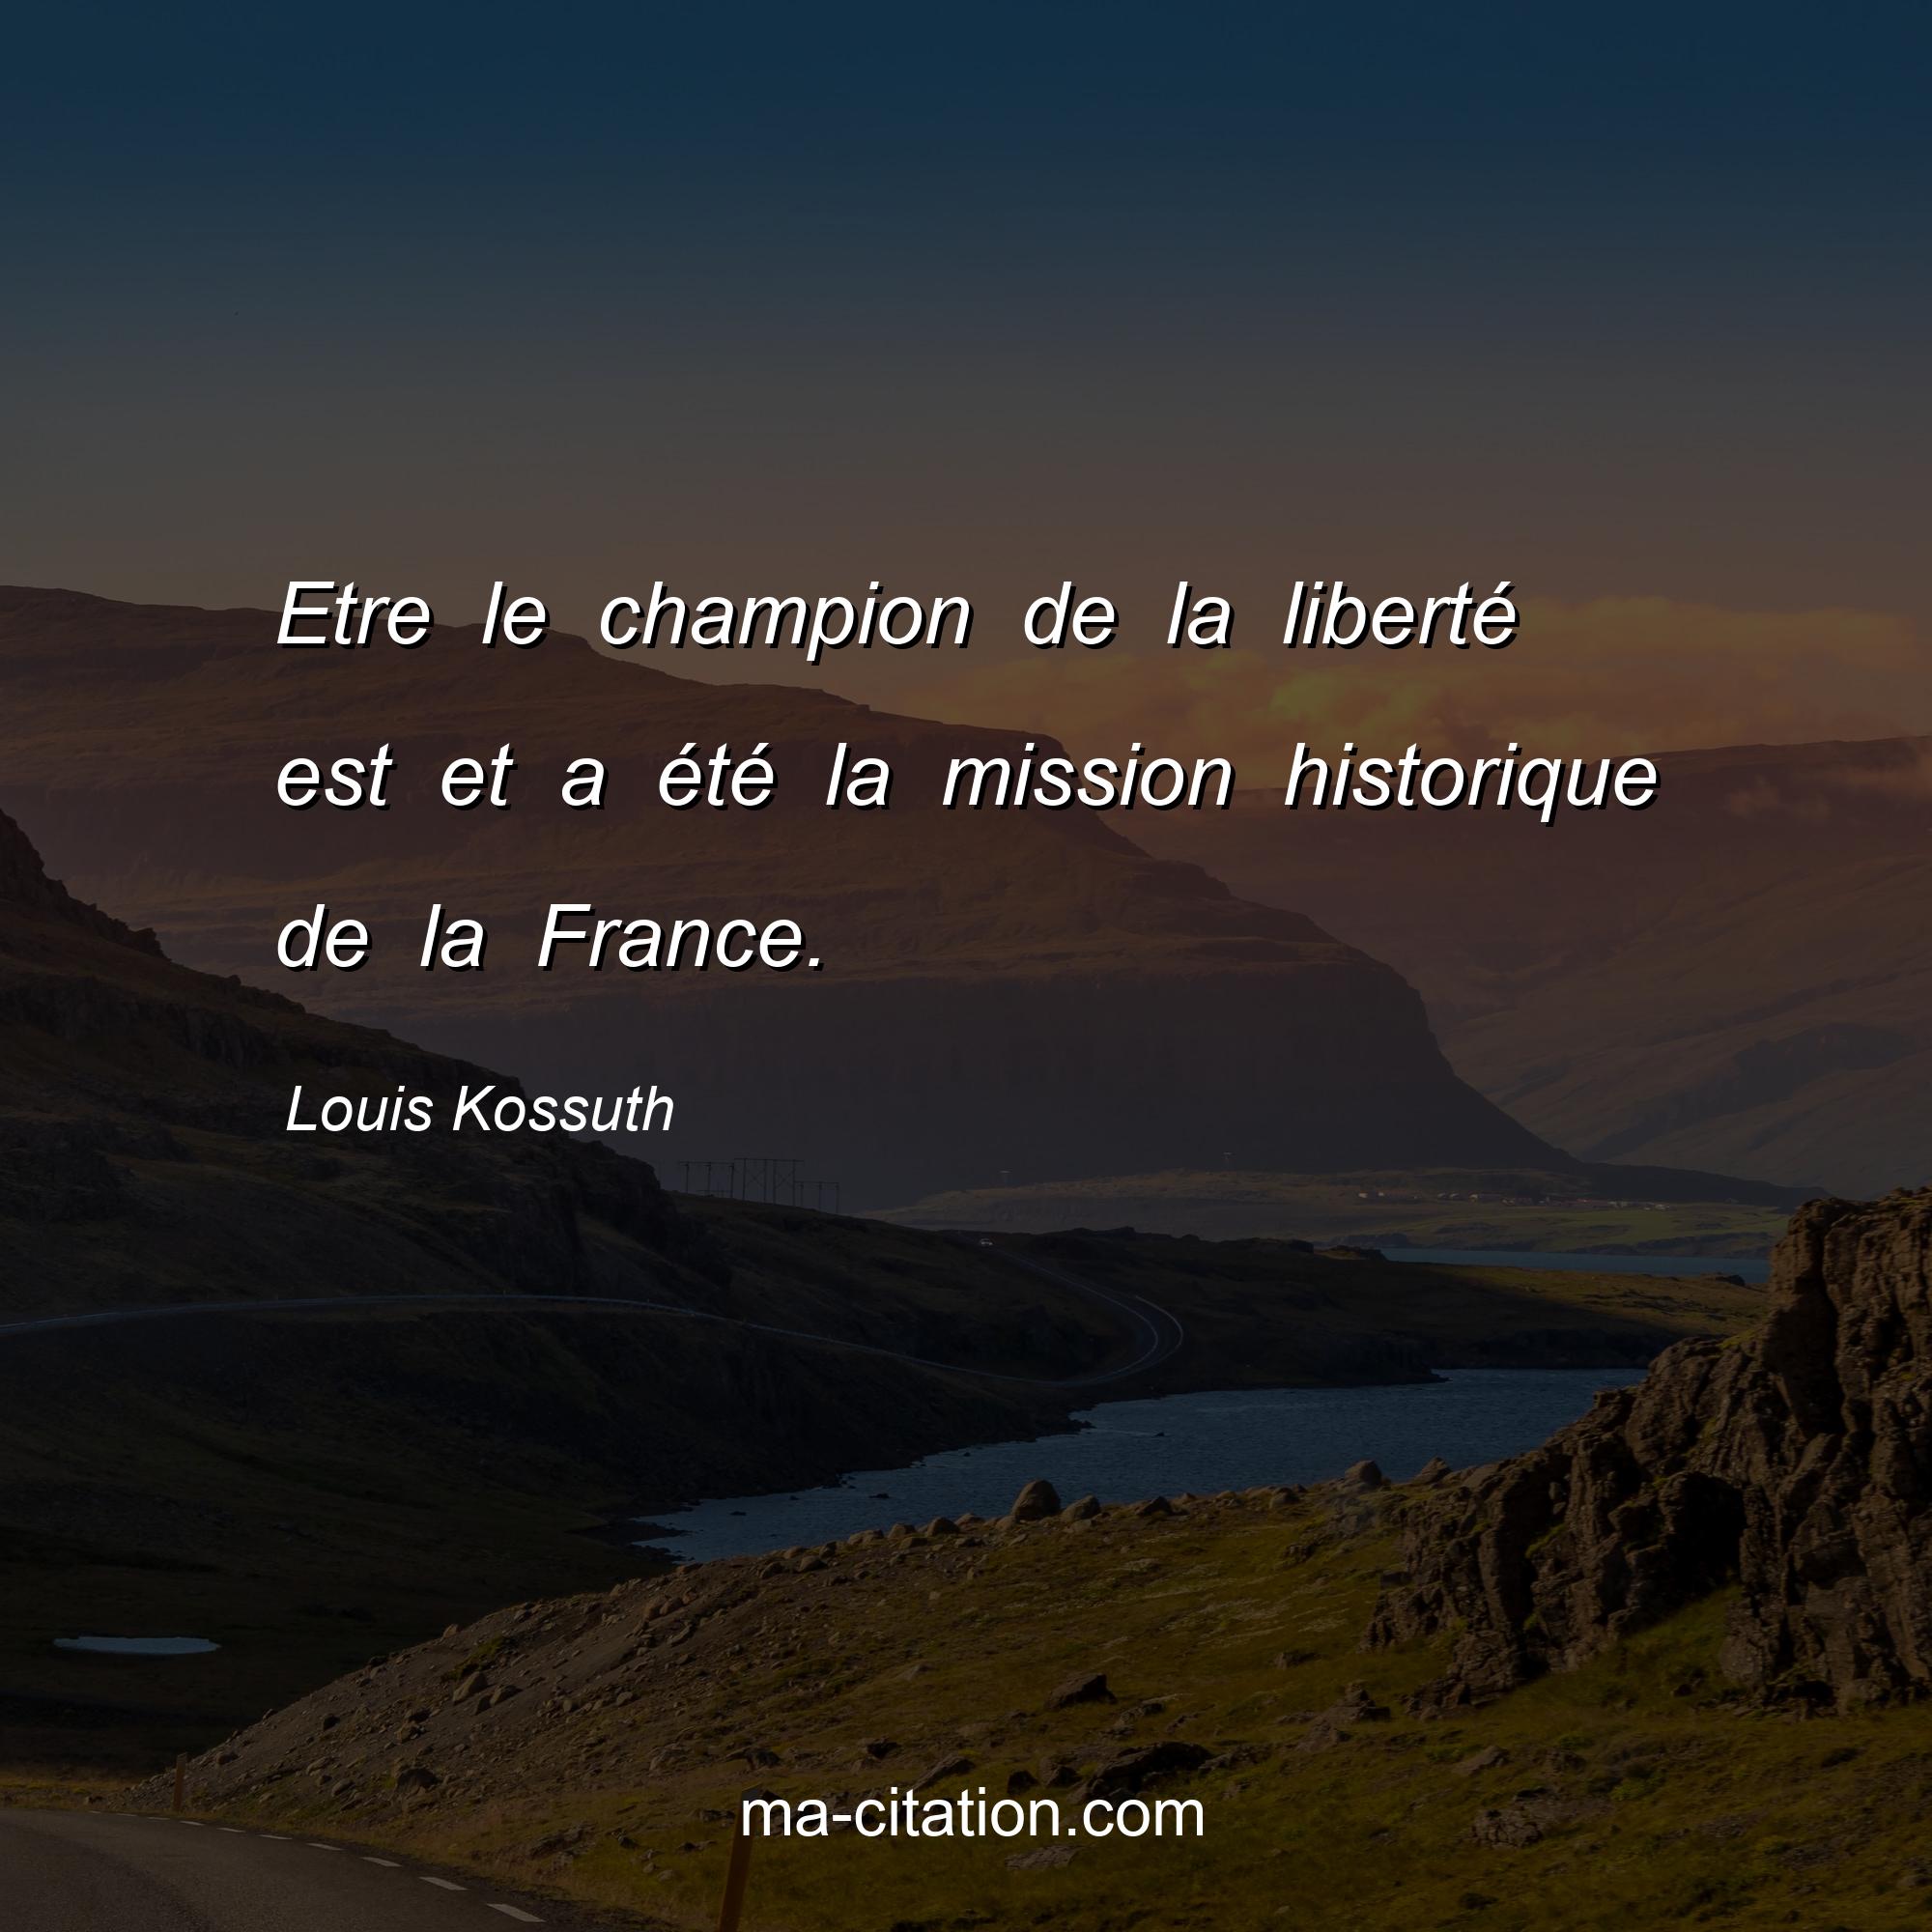 Louis Kossuth : Etre le champion de la liberté est et a été la mission historique de la France.